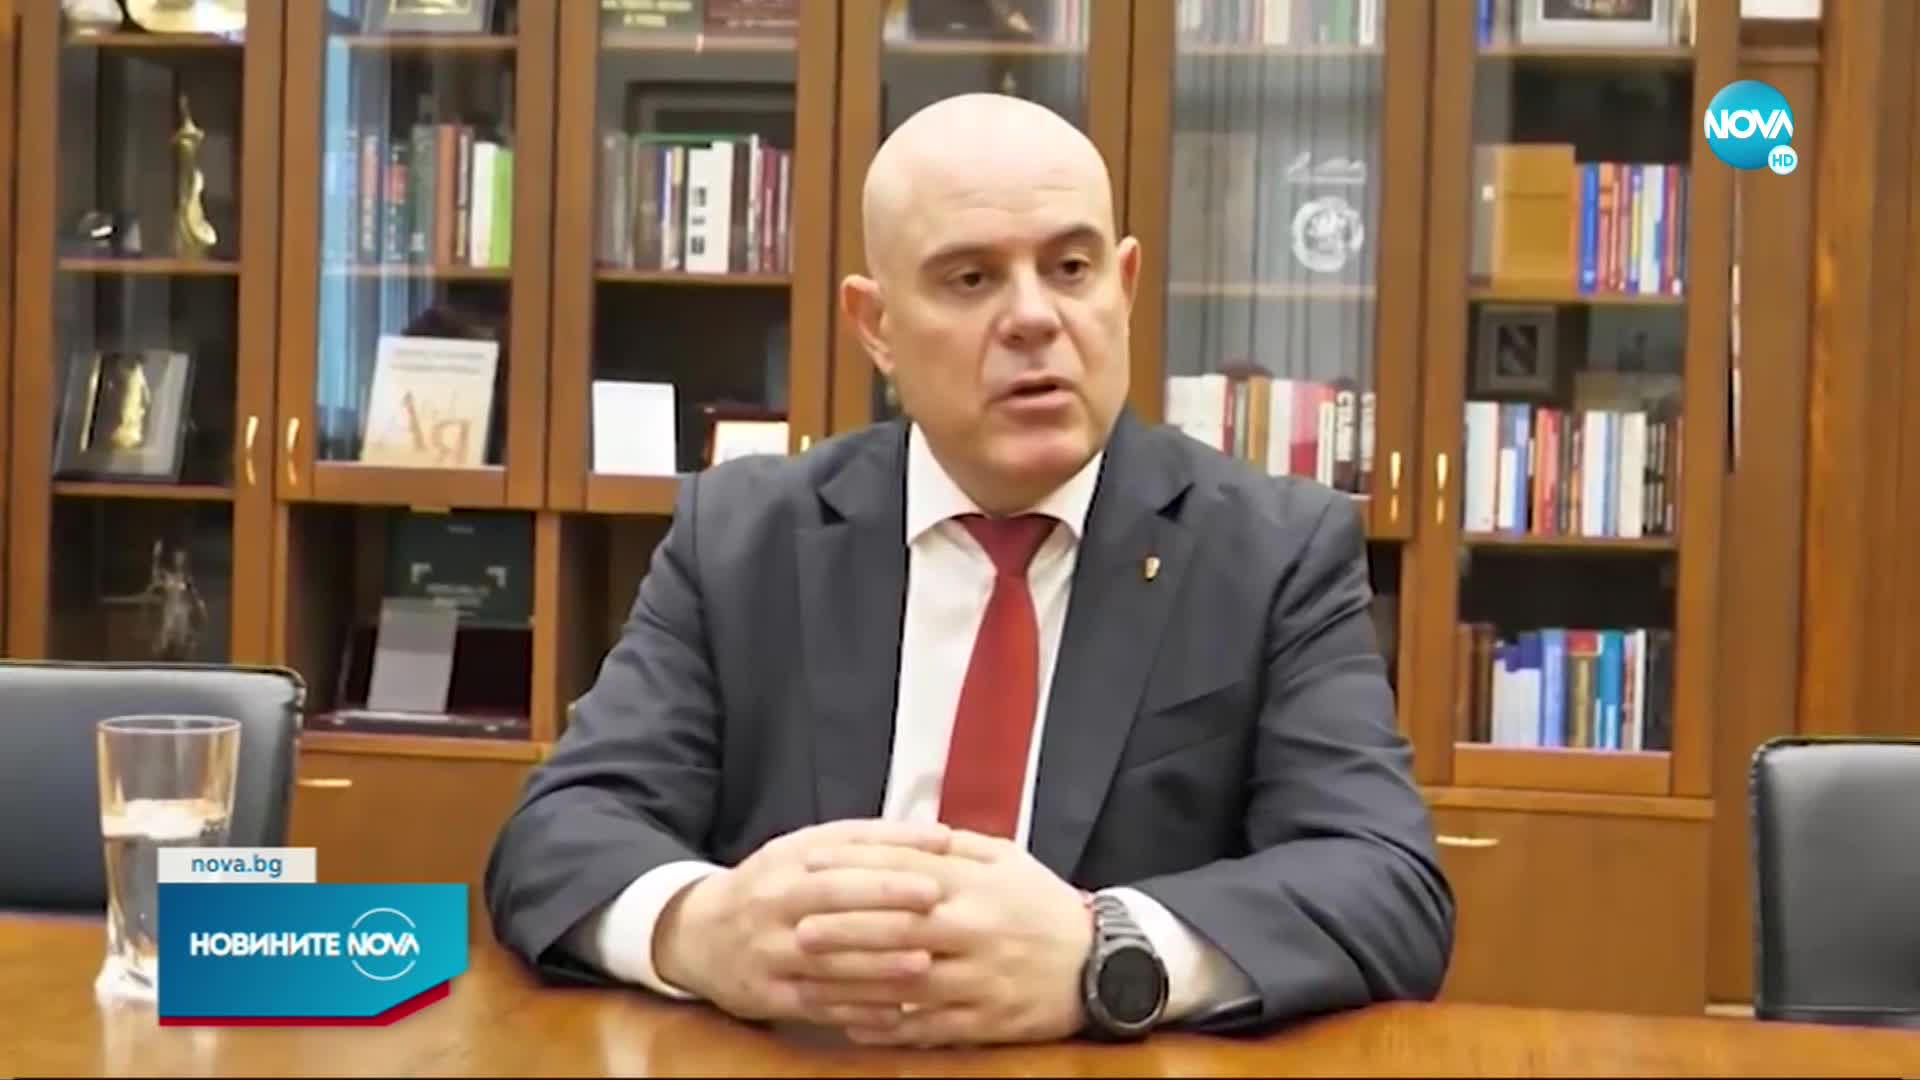 Гешев: Прокуратурата е готова за дебат за реформи